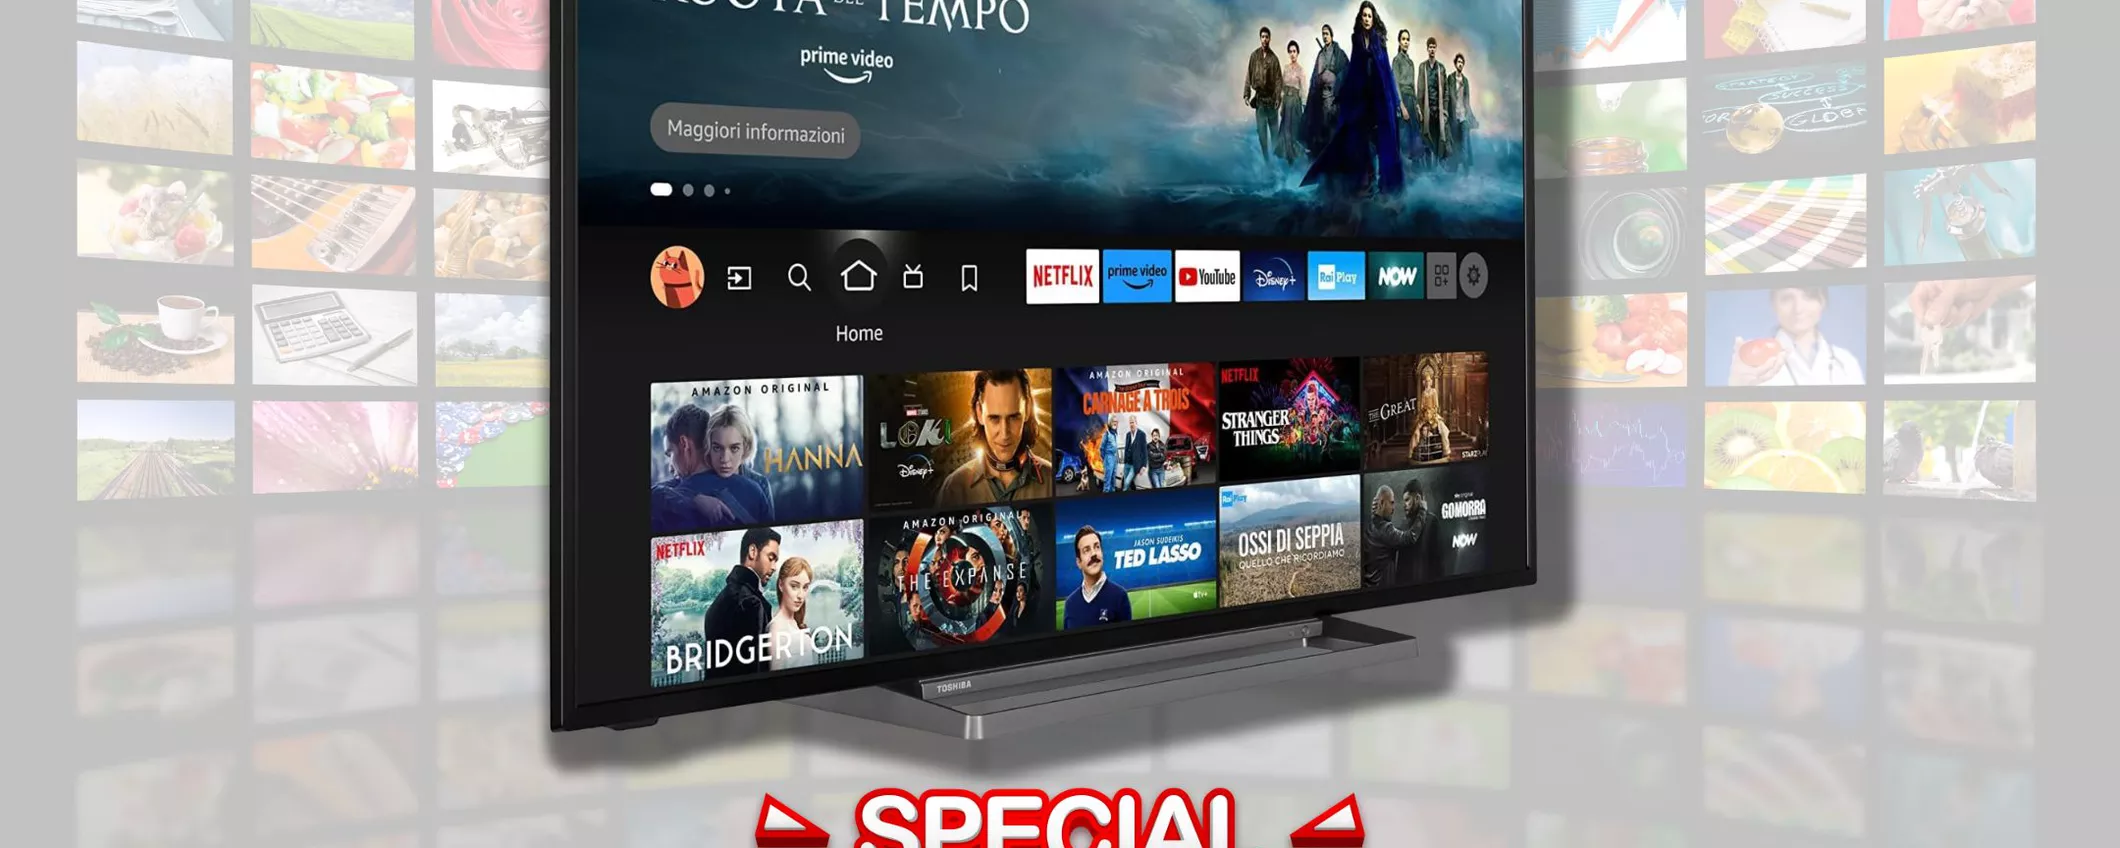 Smart TV Toshiba con ALEXA INTEGRATA: scopri il prezzo SORPRENDENTE su Amazon